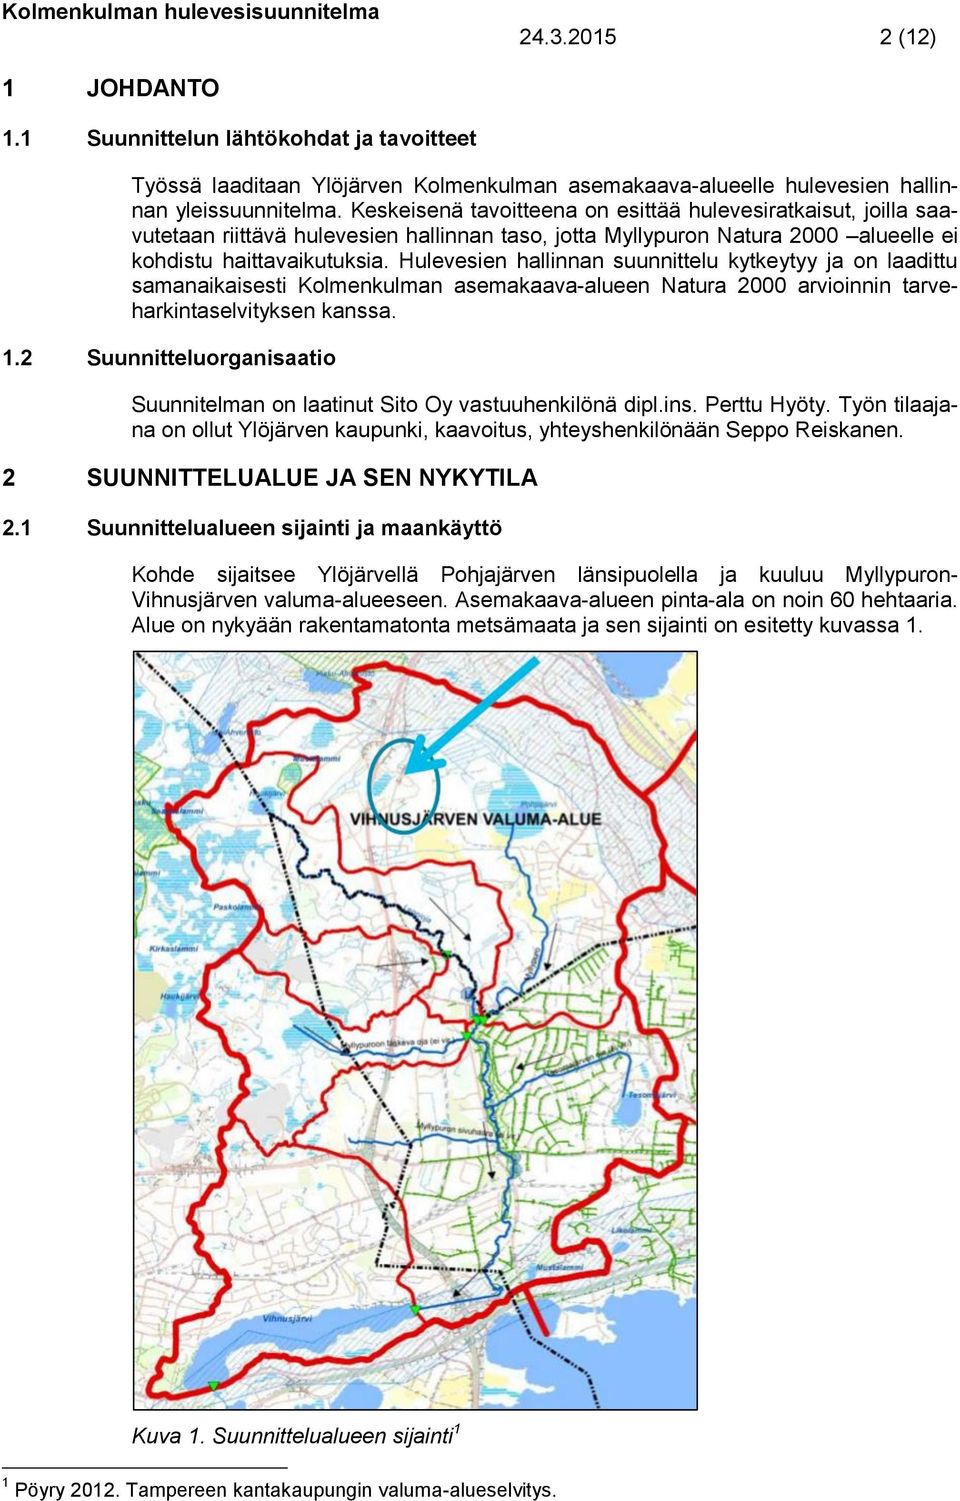 Hulevesien hallinnan suunnittelu kytkeytyy ja on laadittu samanaikaisesti Kolmenkulman asemakaava-alueen Natura 2000 arvioinnin tarveharkintaselvityksen kanssa. 1.